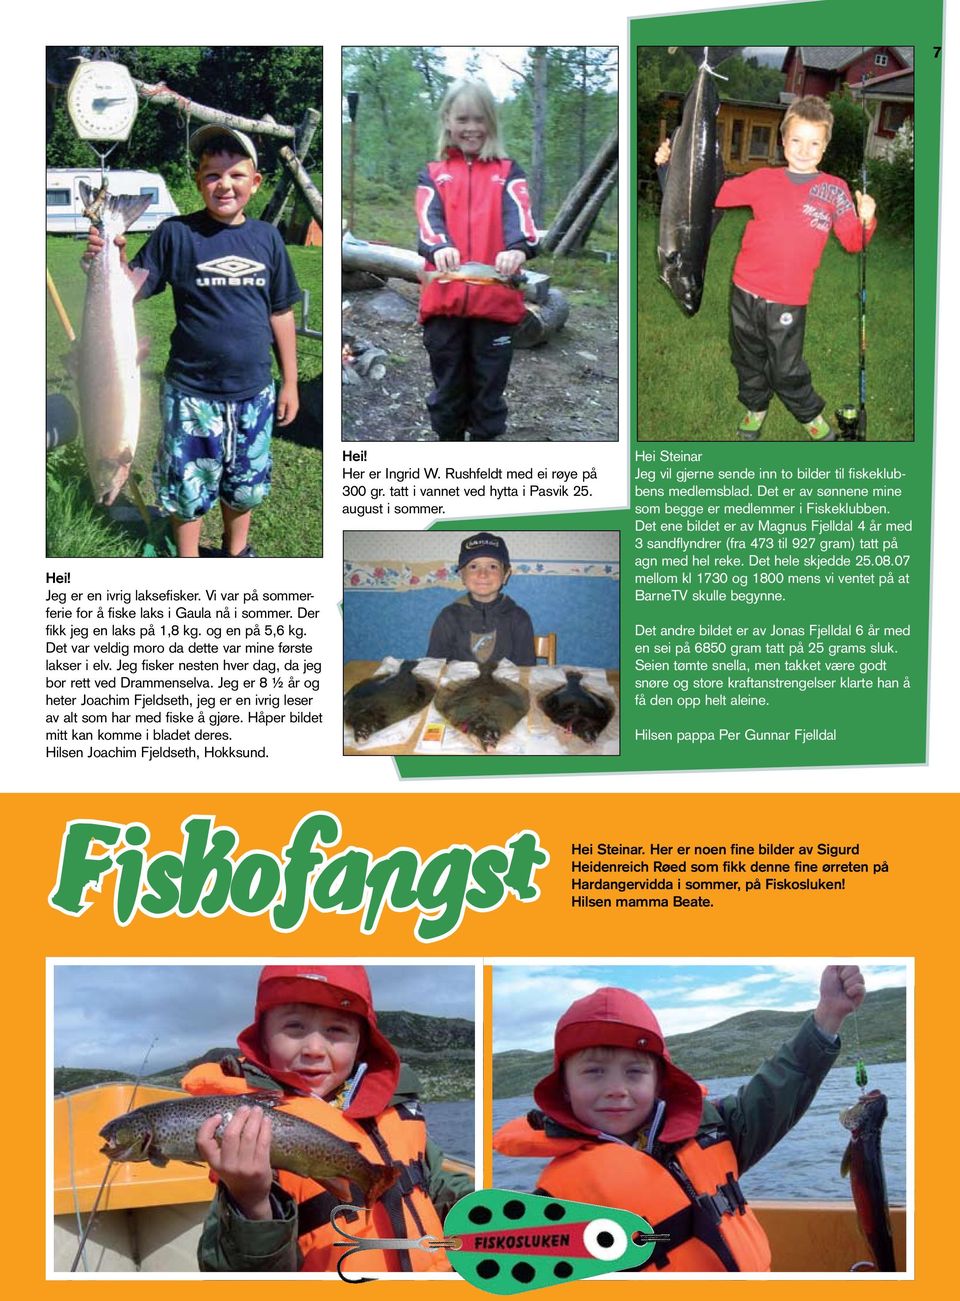 Jeg er 8 ½ år og heter Joachim Fjeldseth, jeg er en ivrig leser av alt som har med fiske å gjøre. Håper bildet mitt kan komme i bladet deres. Hilsen Joachim Fjeldseth, Hokksund. Hei! Her er Ingrid W.